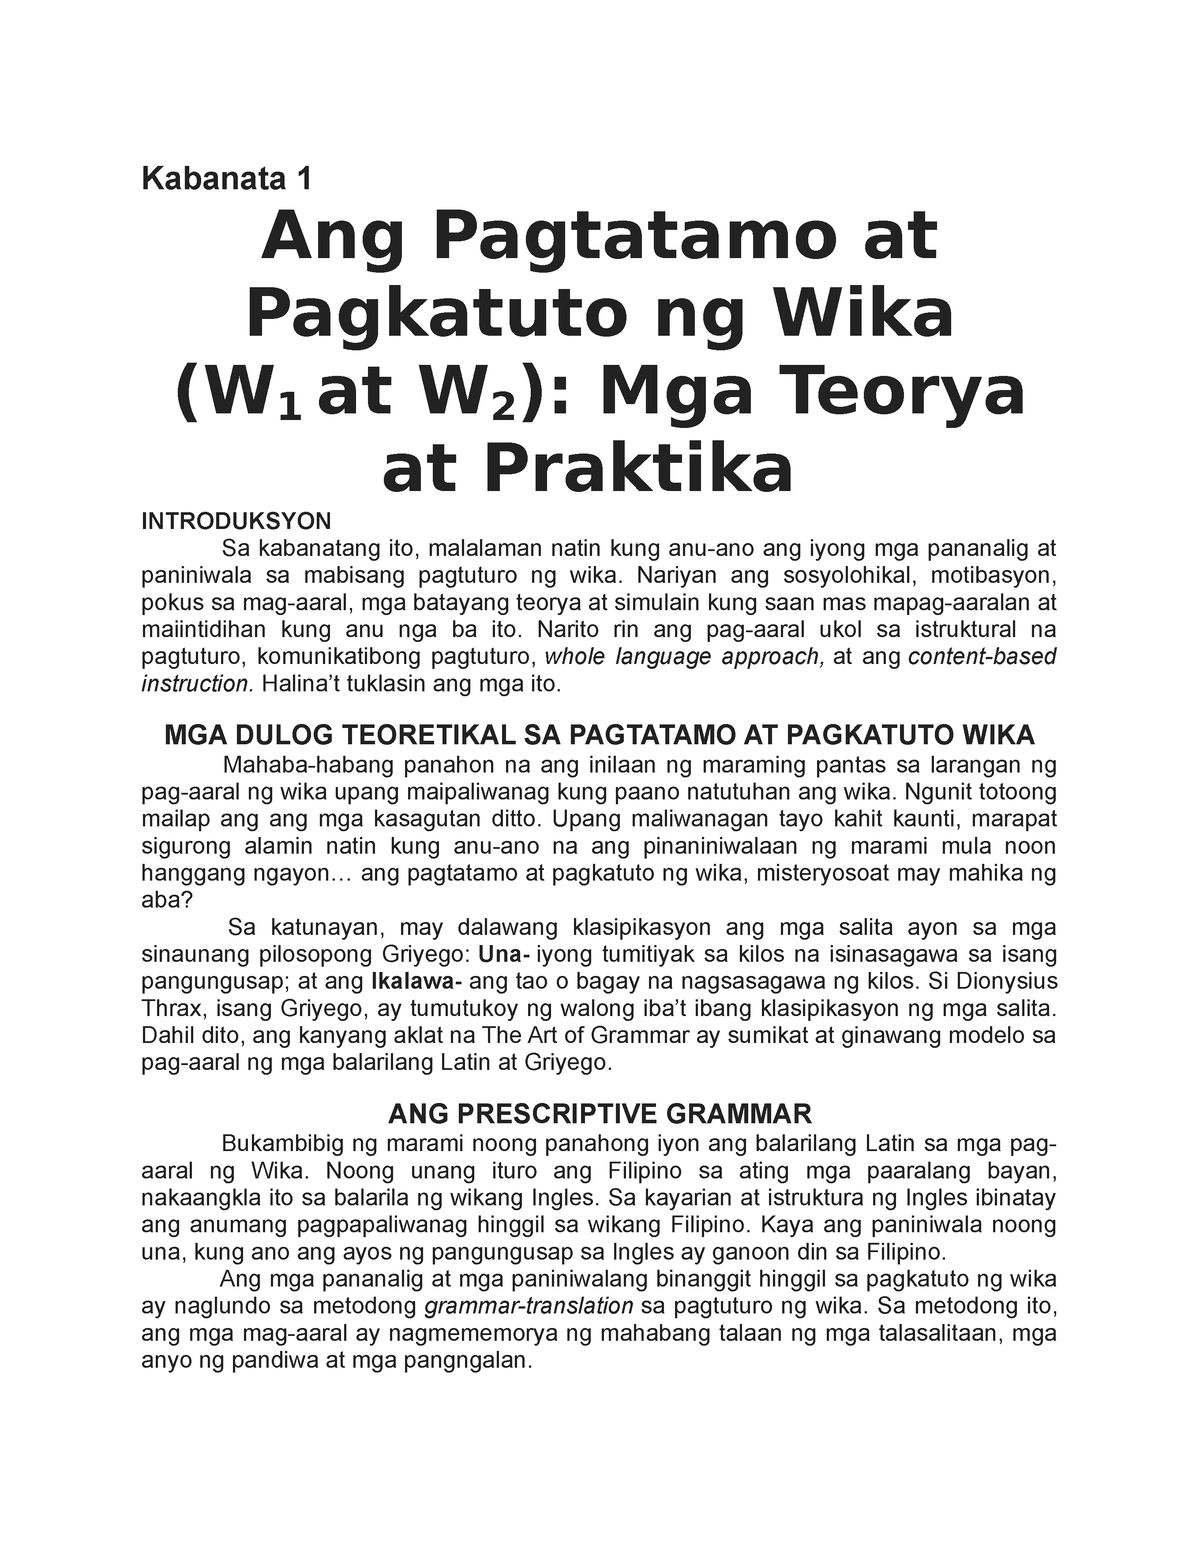 Mga Teorya Sa Filipino Kabanata Ang Pagtatamo At Pagkatuto Ng Wika Hot Sex Picture 5837